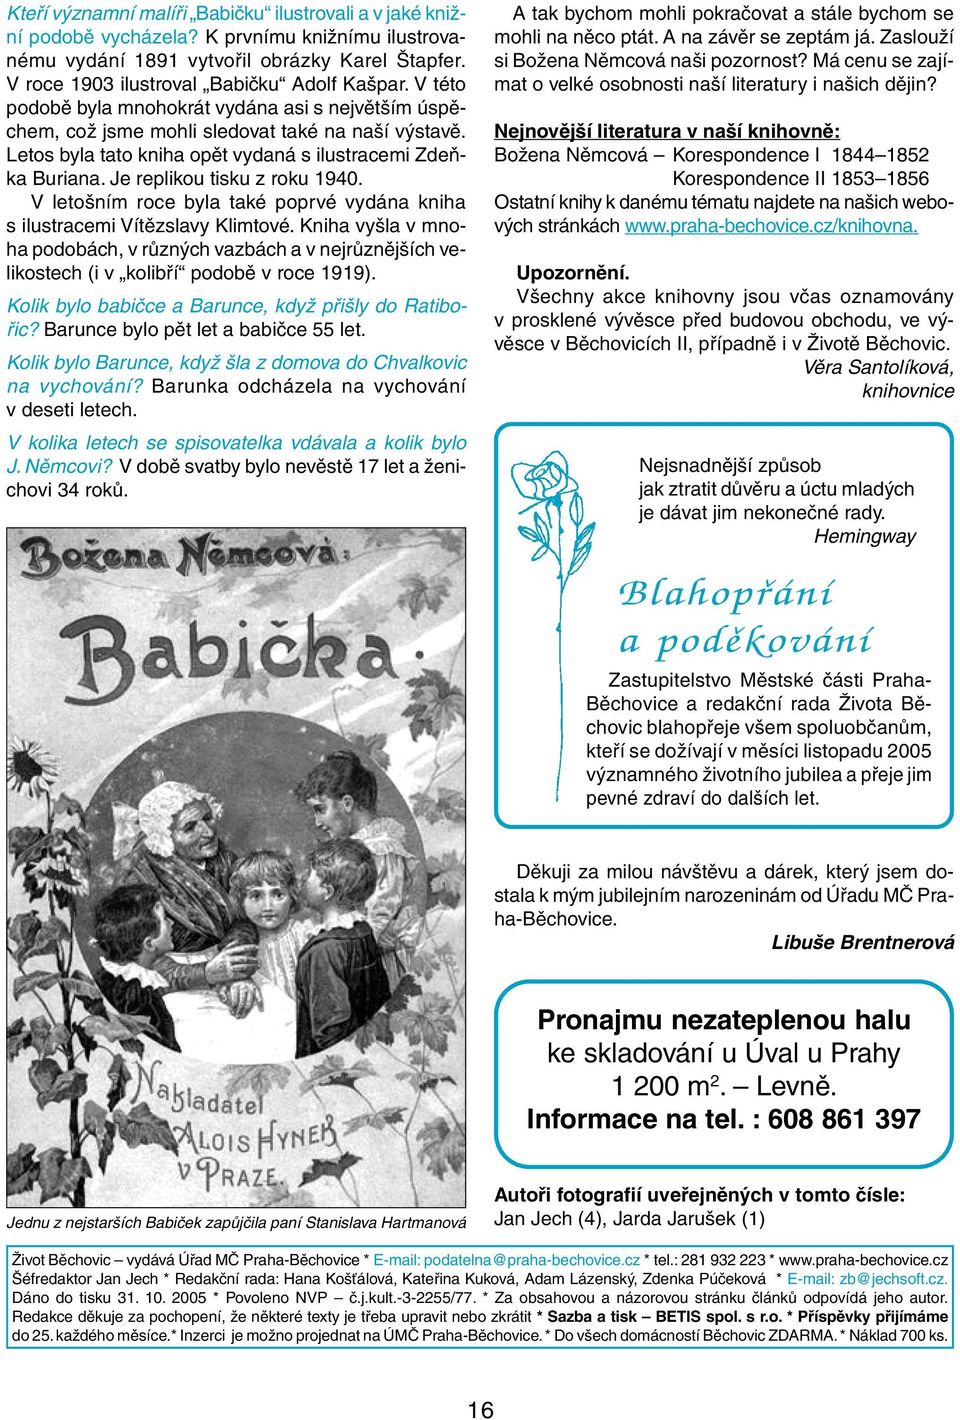 Je replikou tisku z roku 1940. V letošním roce byla také poprvé vydána kniha s ilustracemi Vítězslavy Klimtové.